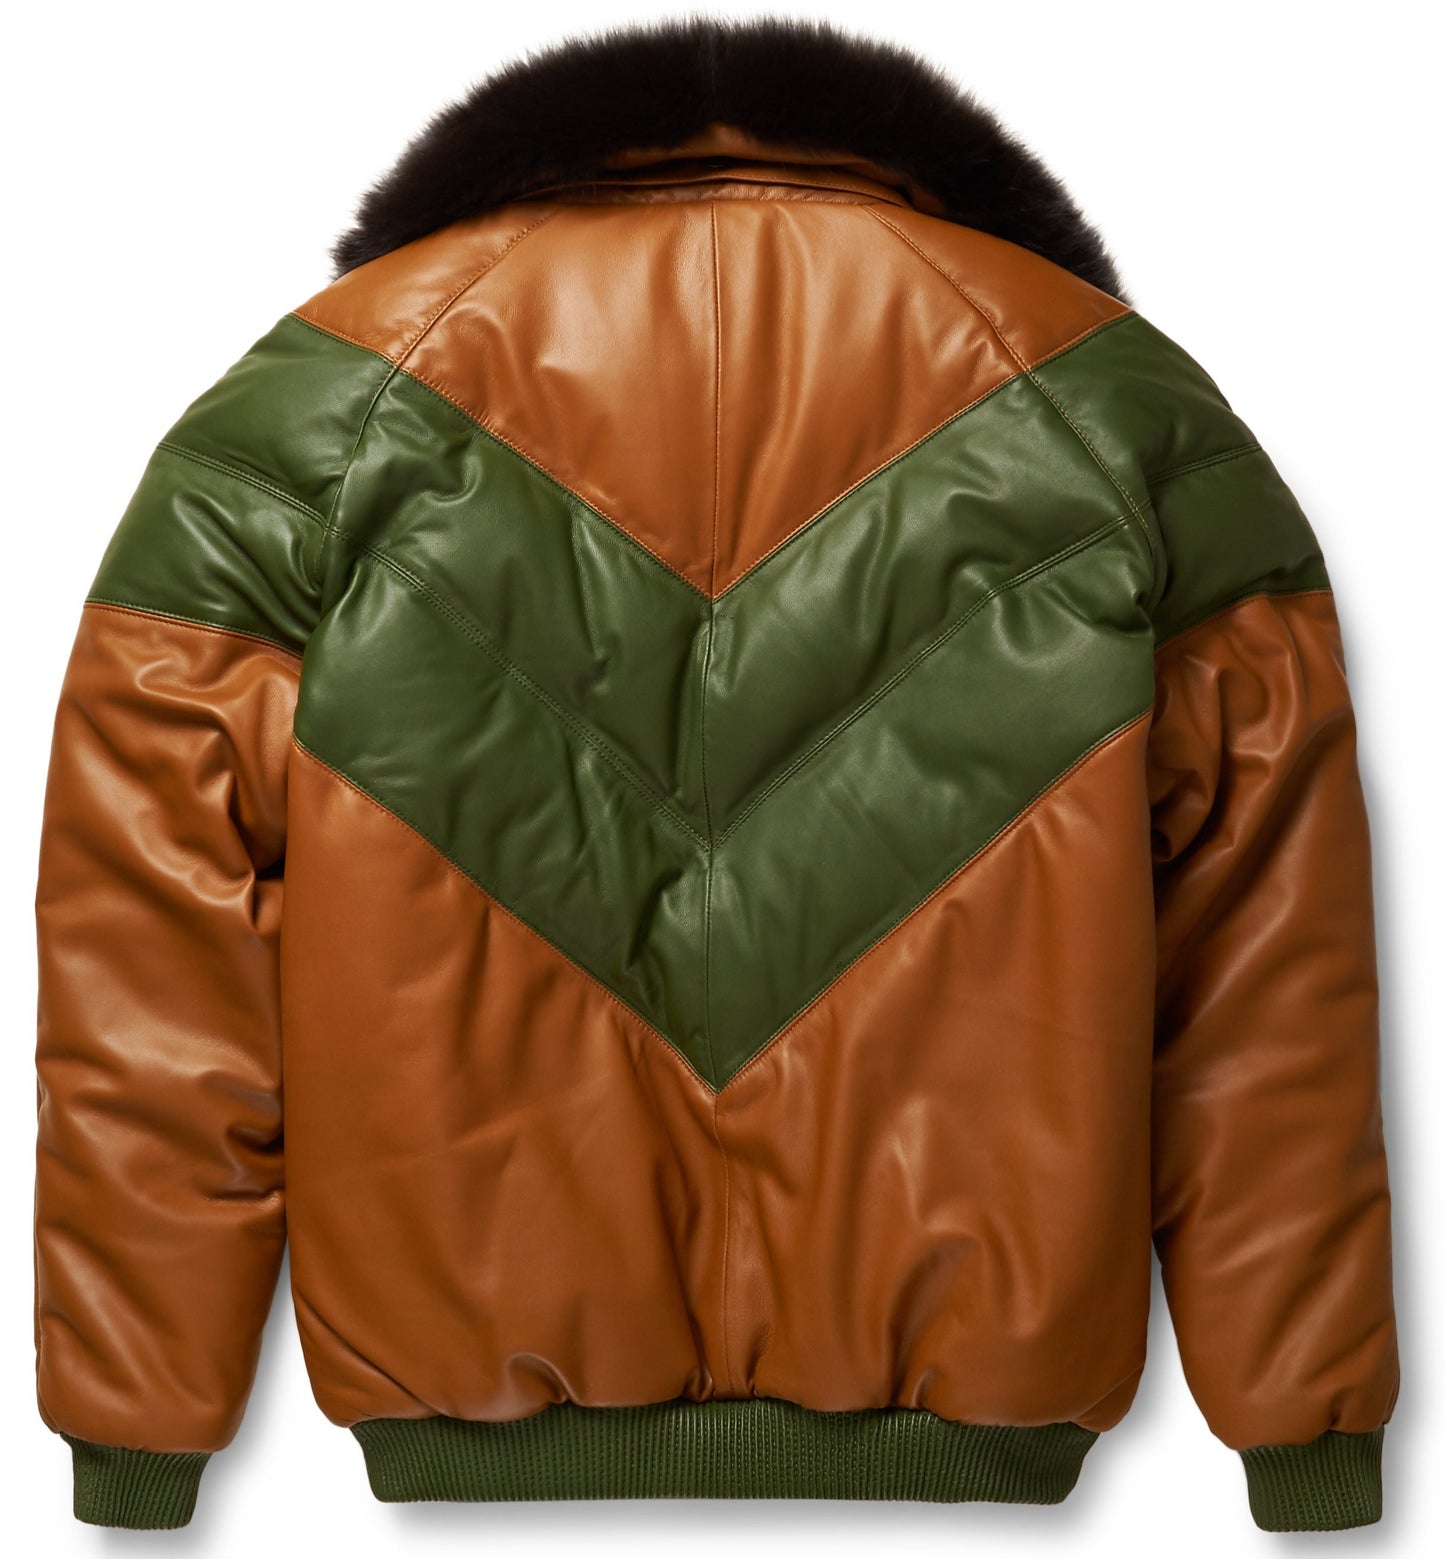 Brown & Green Leather V-Bomber Jacket